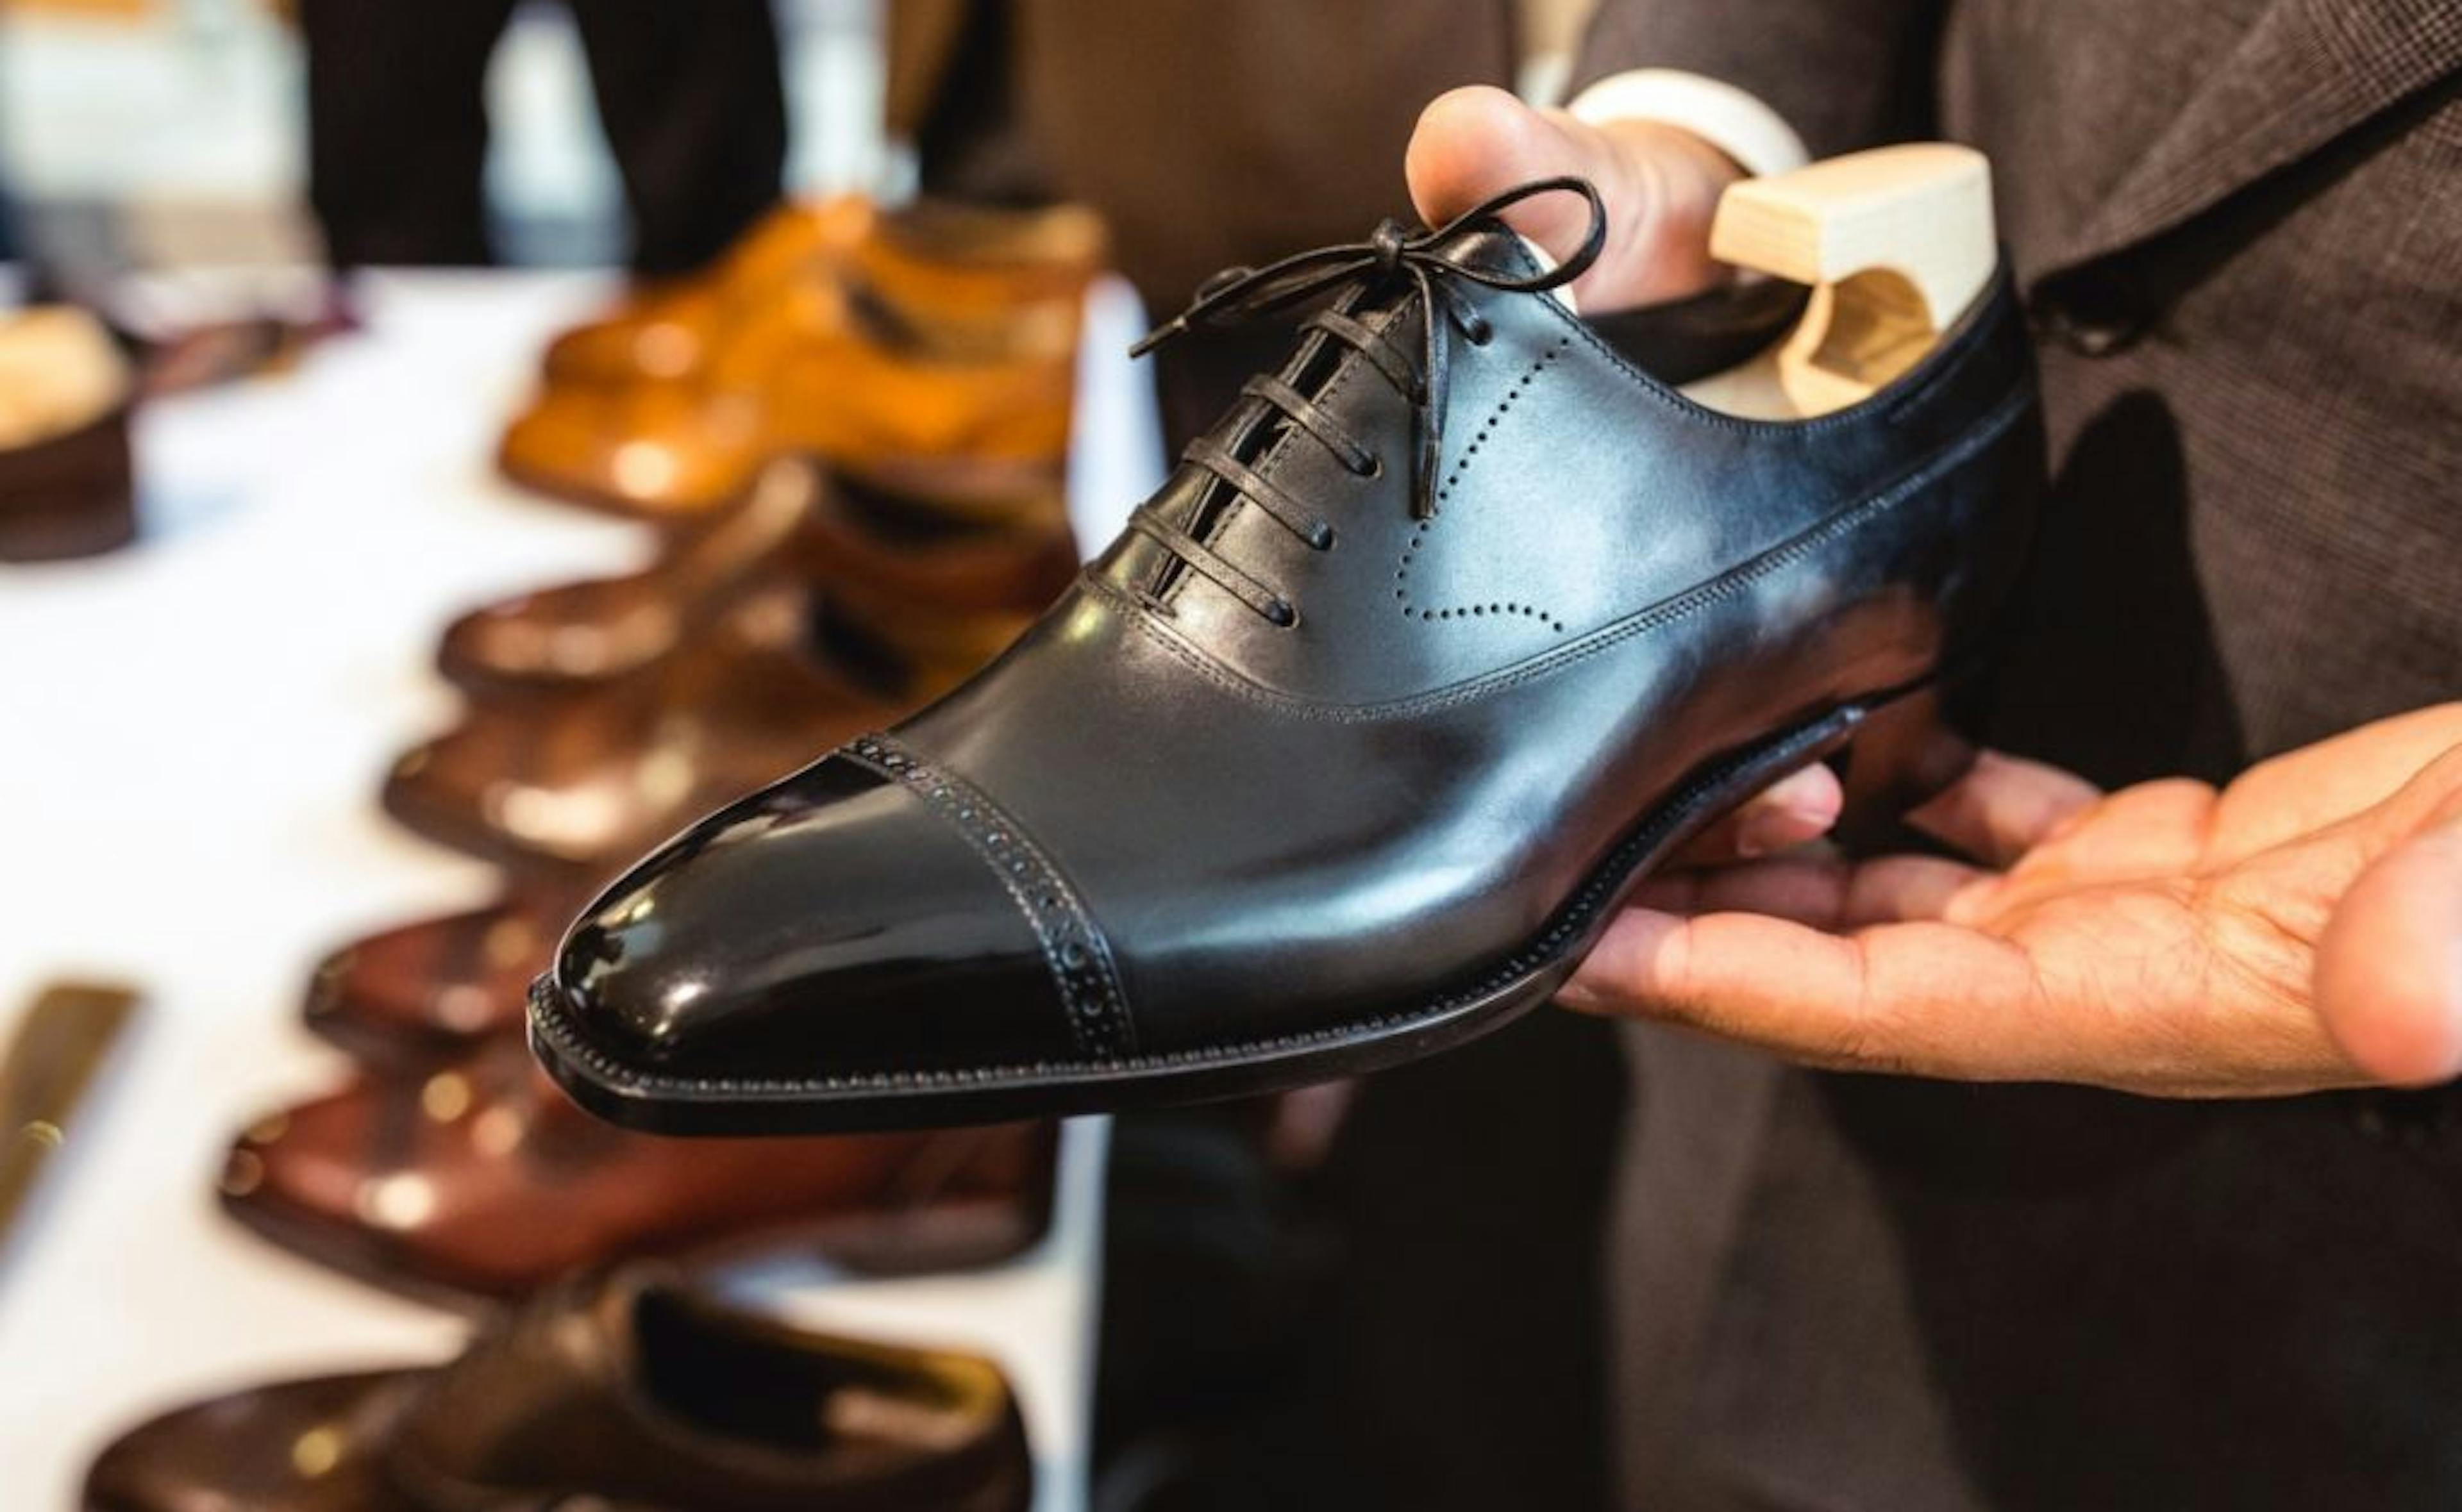 Sandales en cuir brun pour hommes Chaussures Chaussures homme Chaussons Modèle 24 